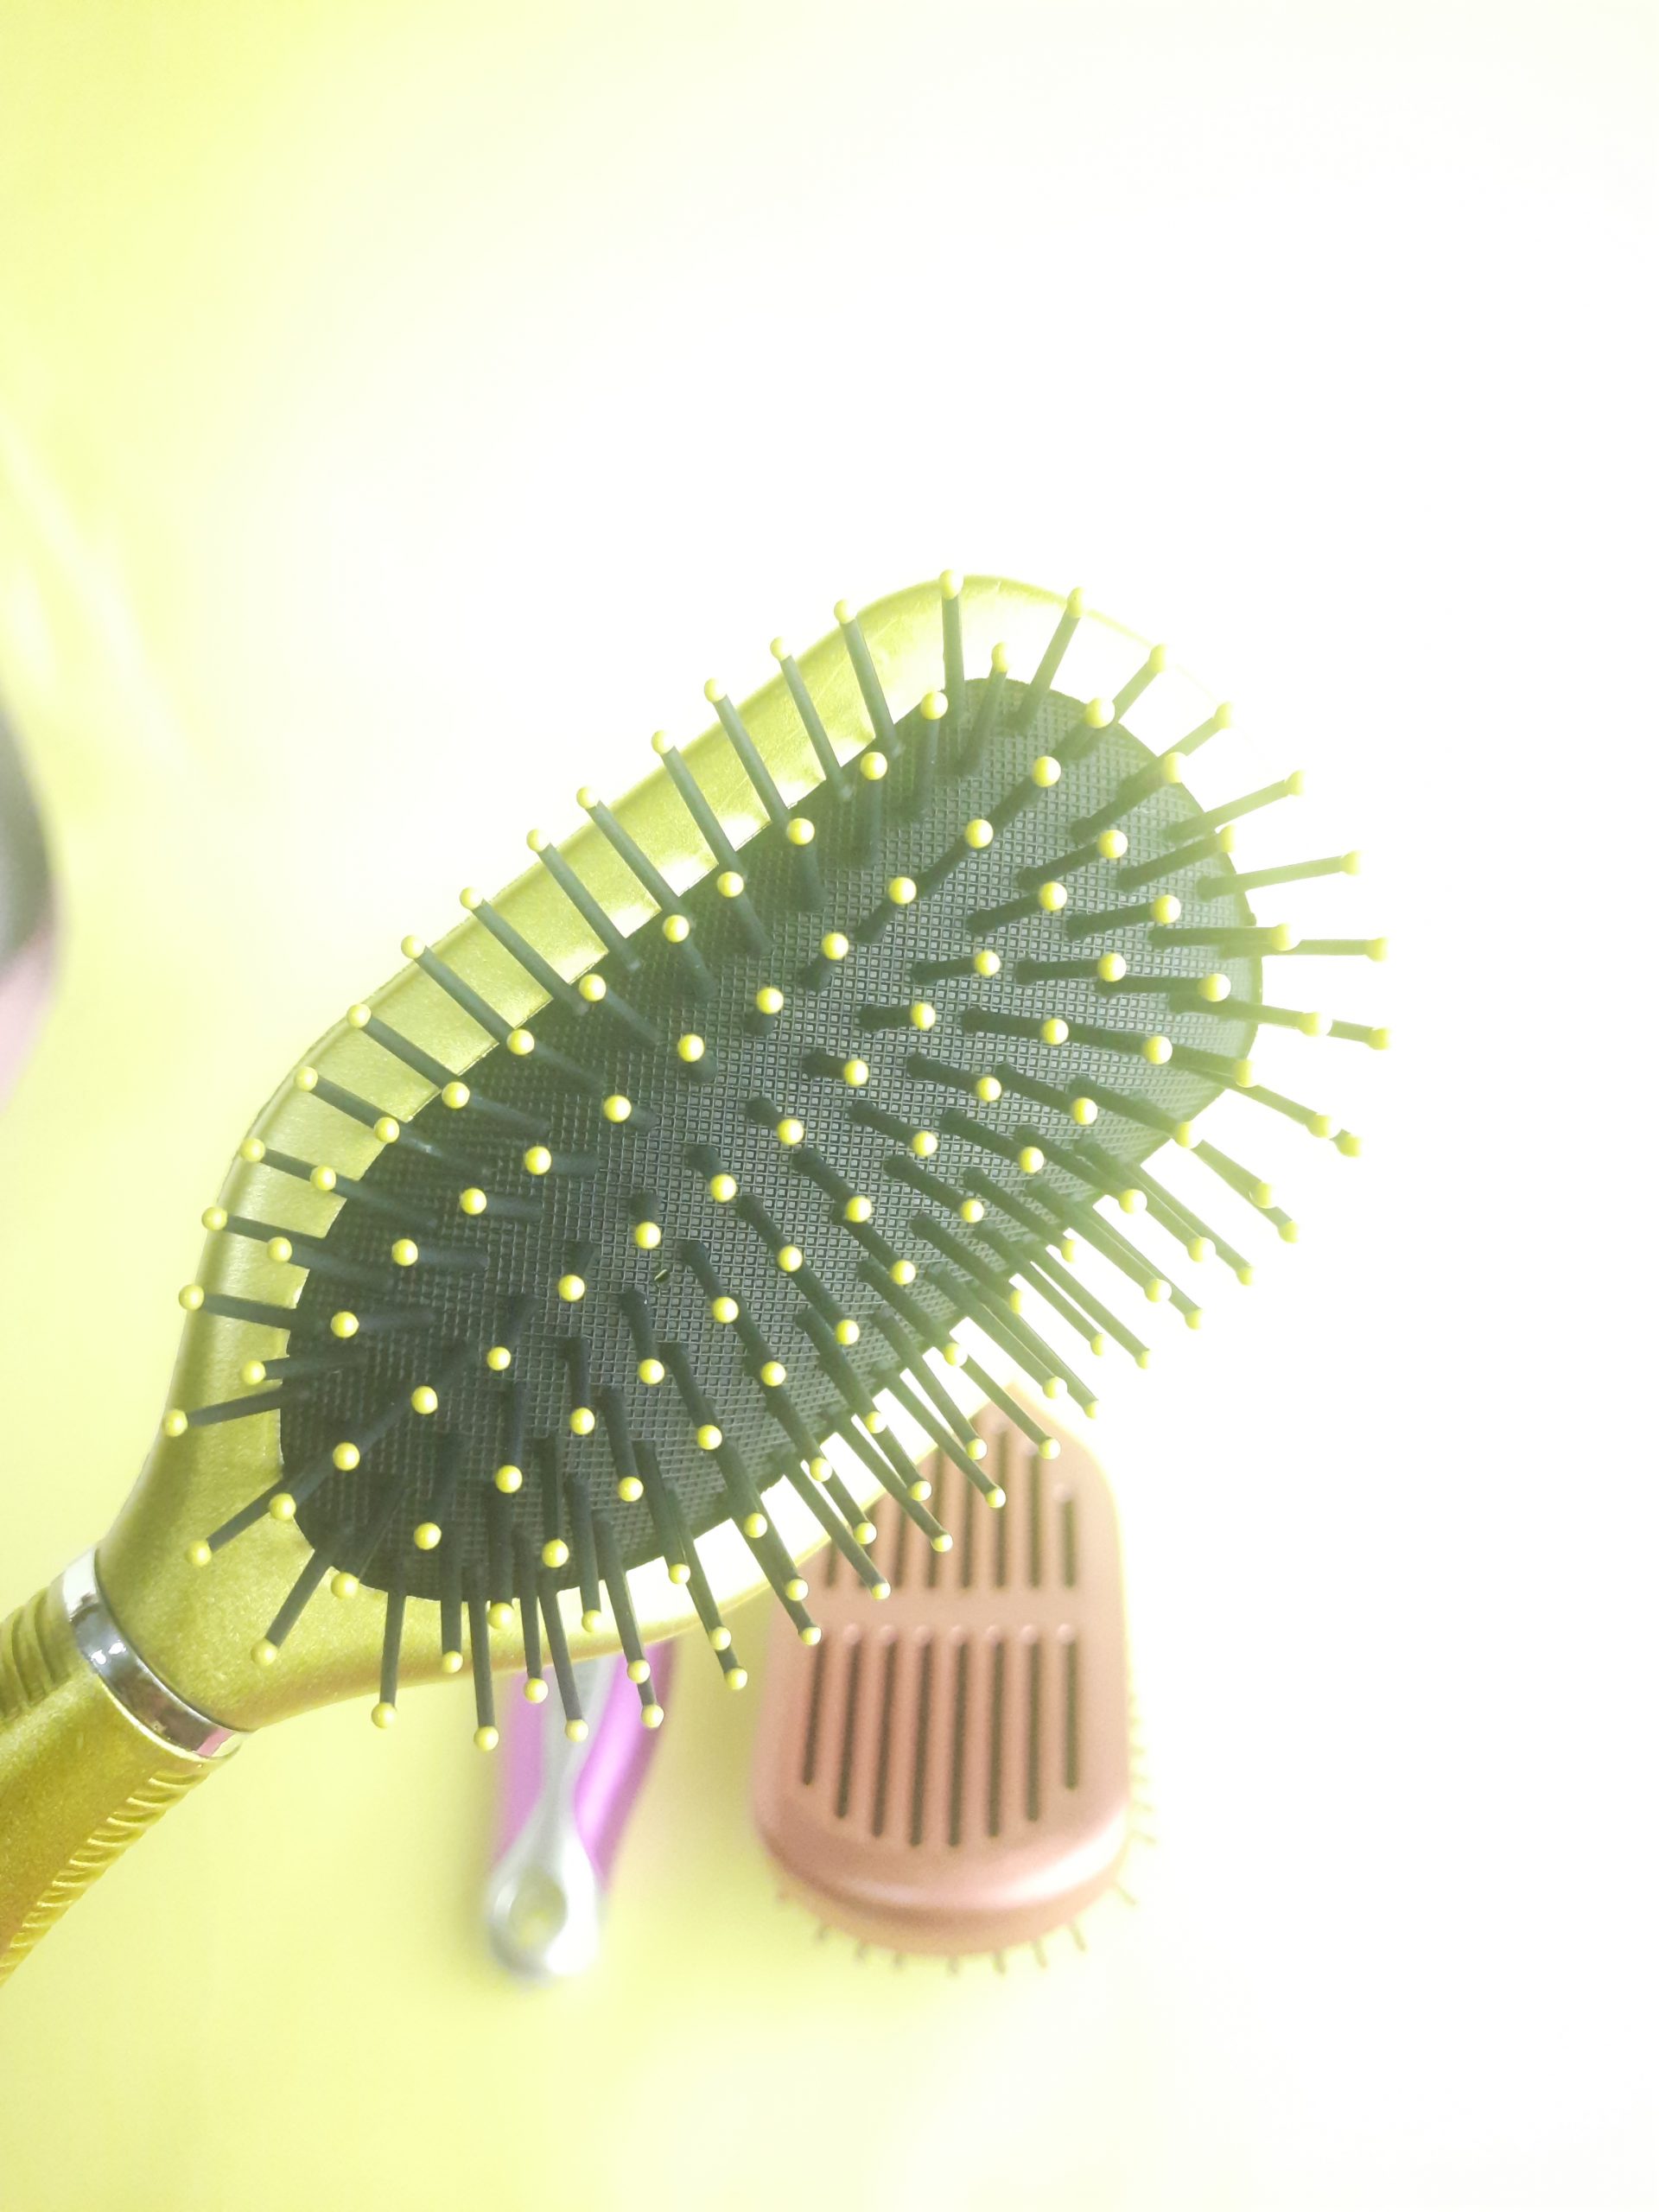 Professional Hairbrush – Mirta de Perales